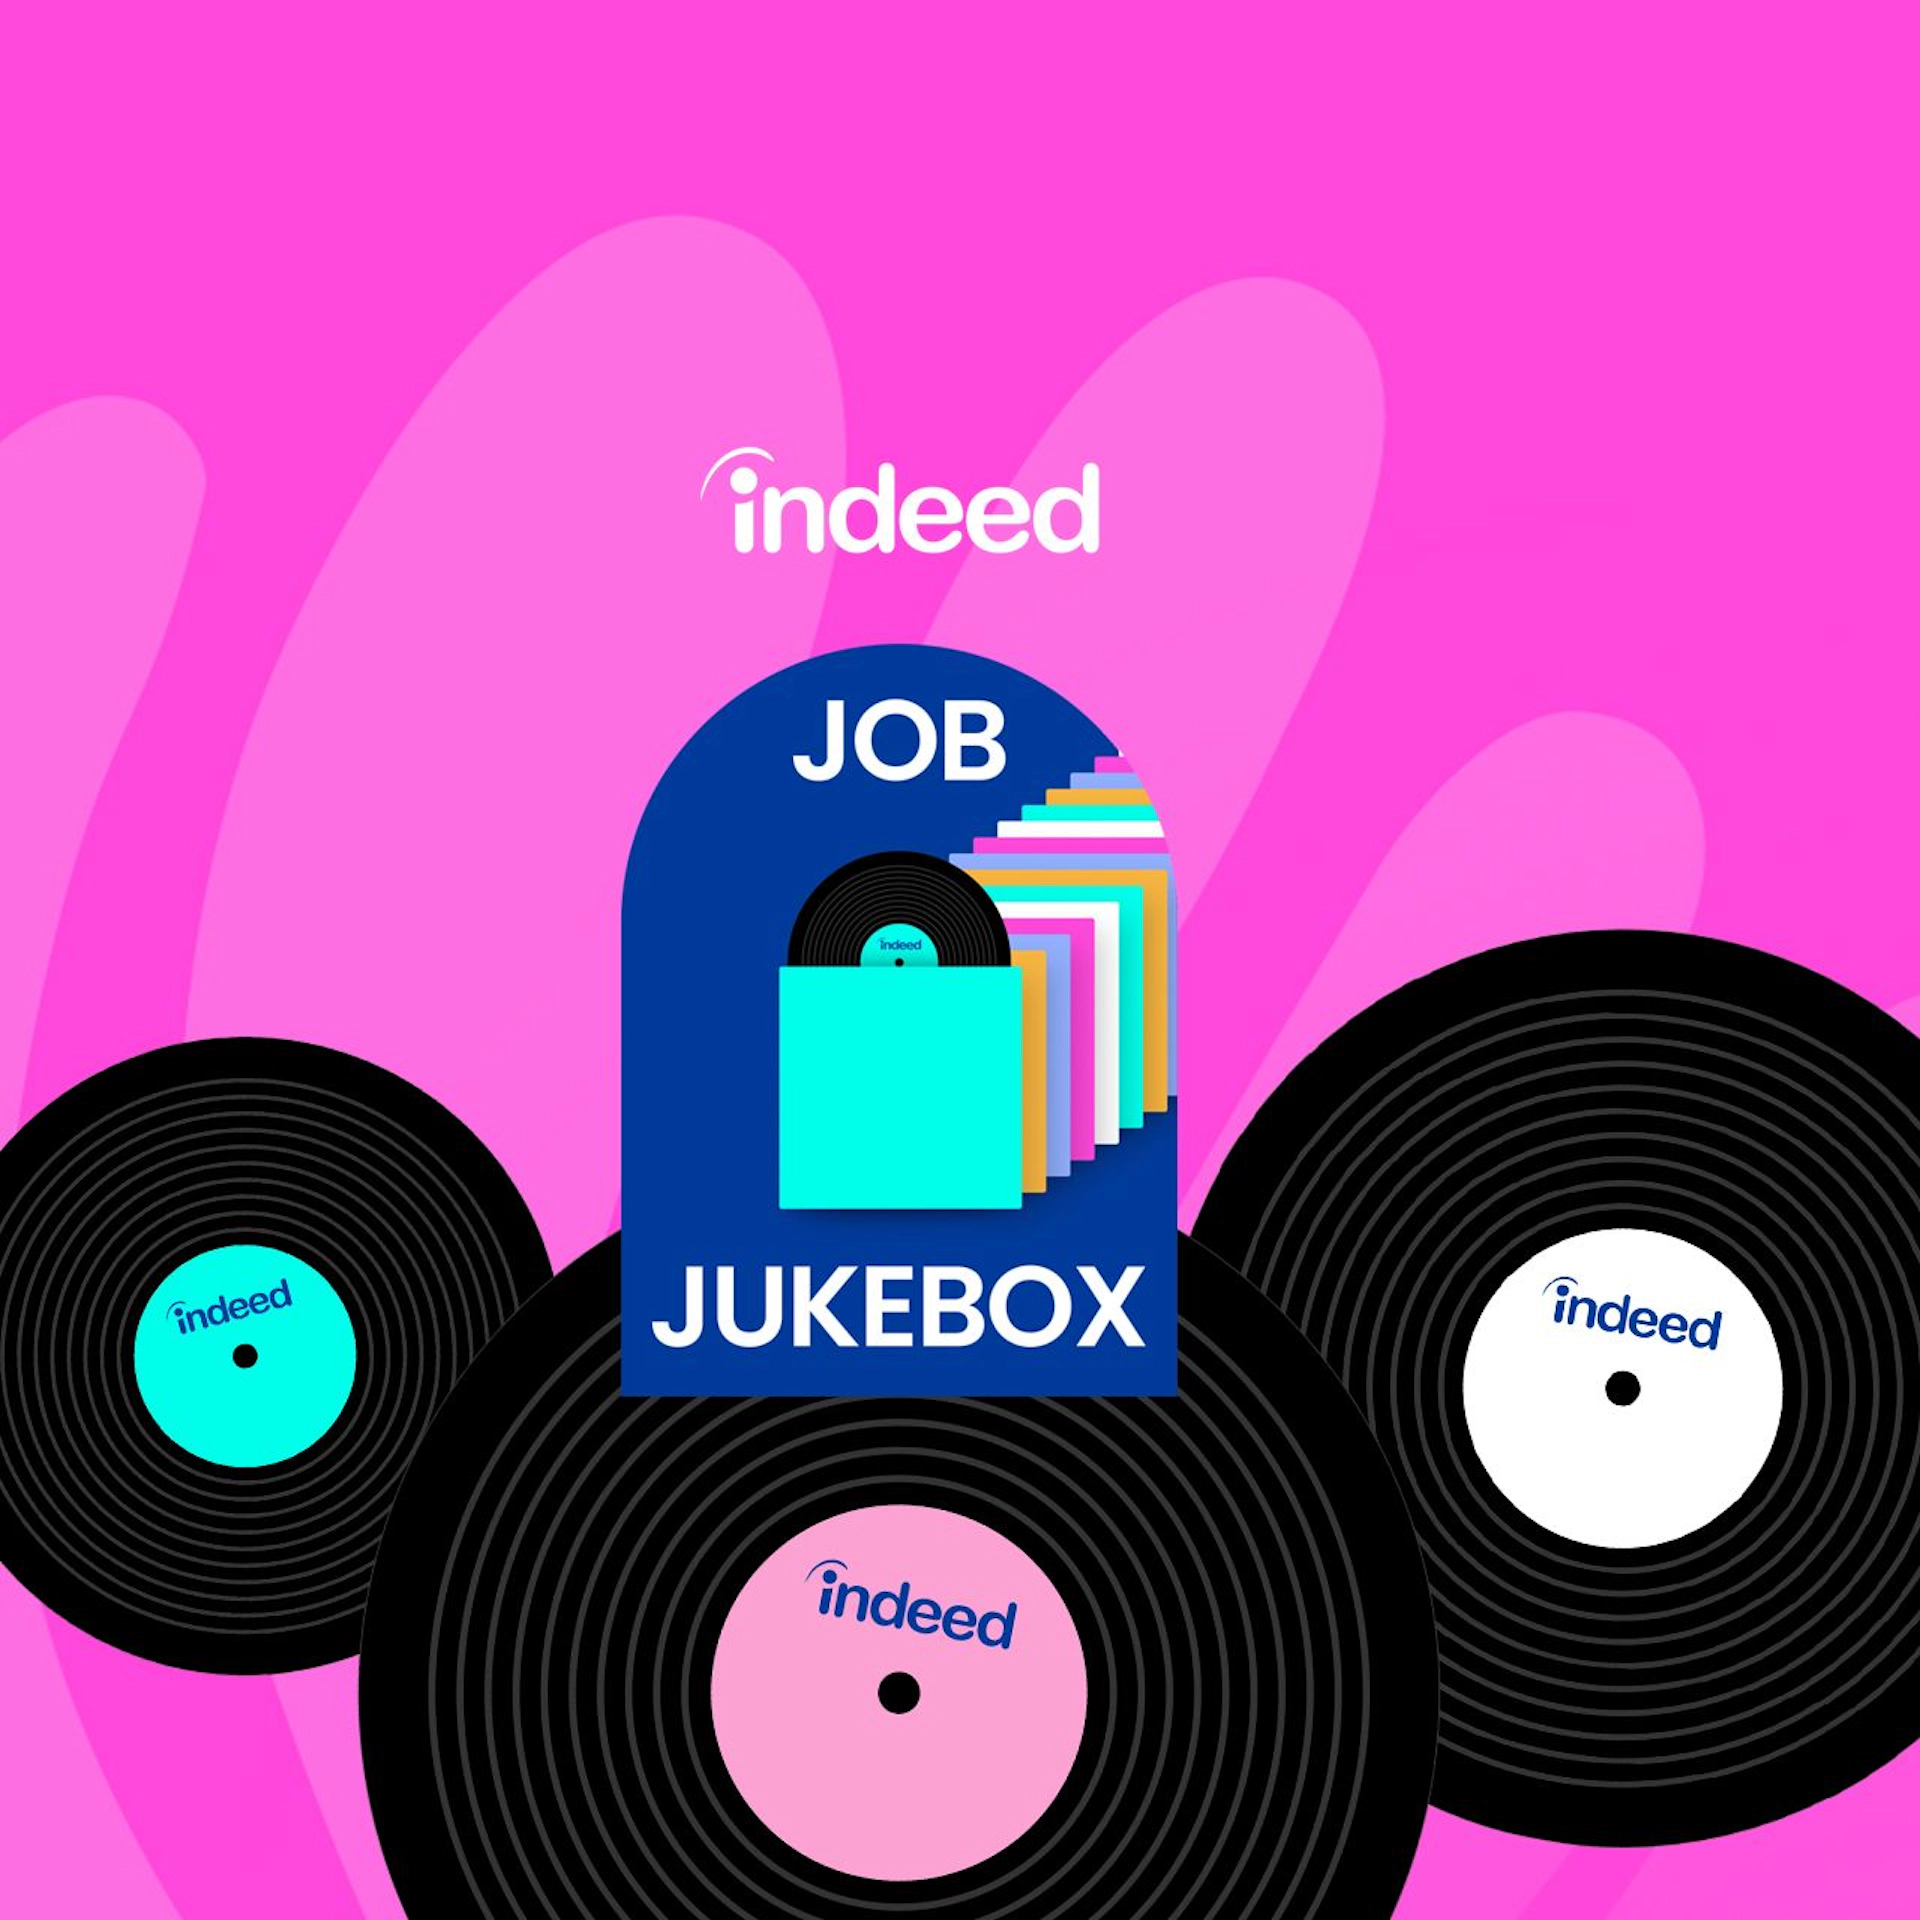 Indeed Job Jukebox